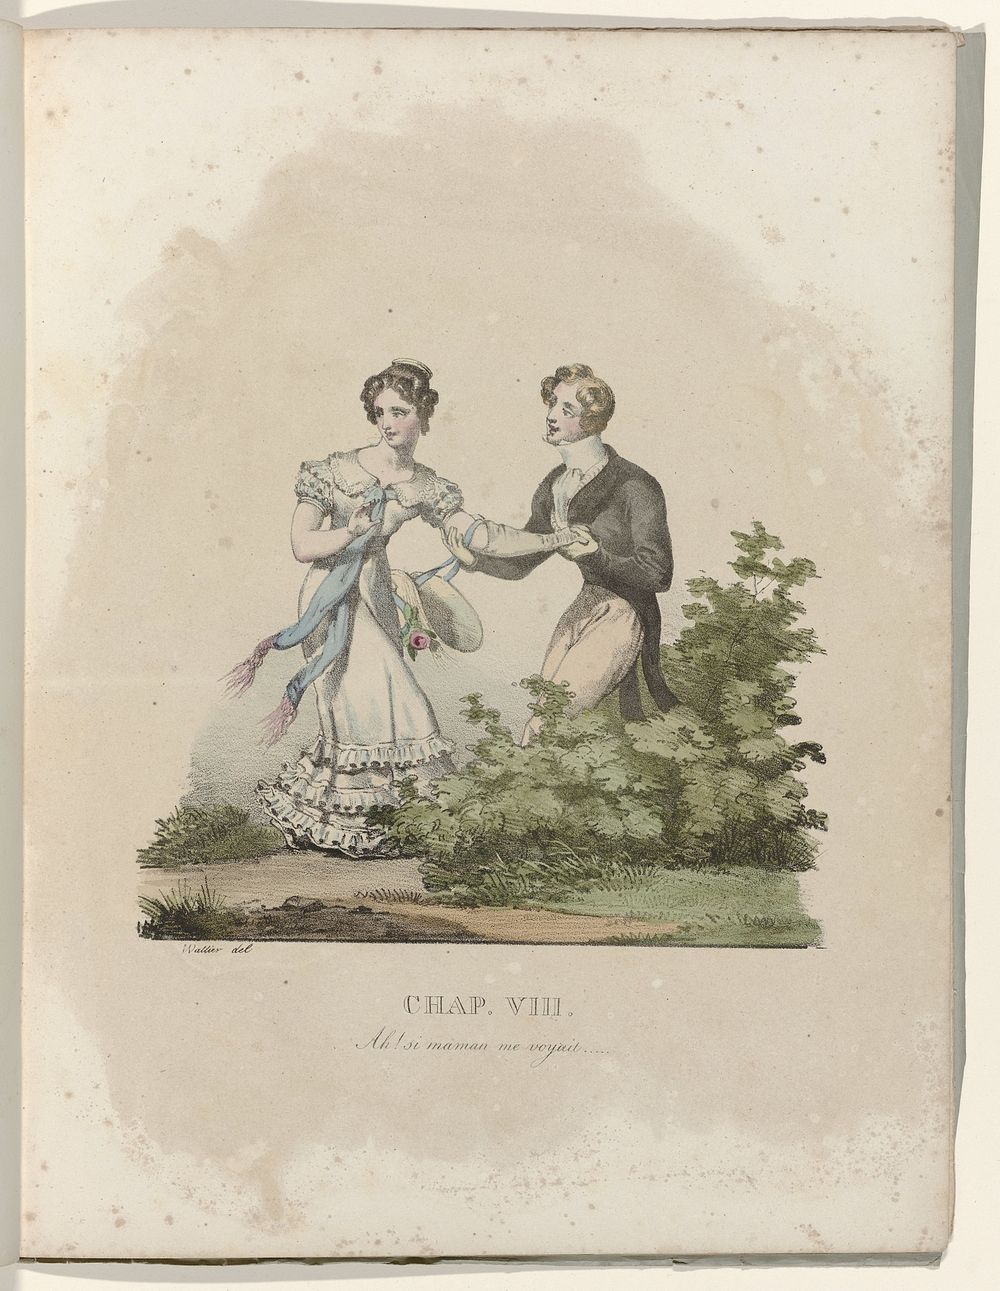 La Né d'une Modiste, 1828 : Chap. VIII: Ah ! si maman me voyait (...) (c. 1828) by Gottfried Engelmann and Wattier